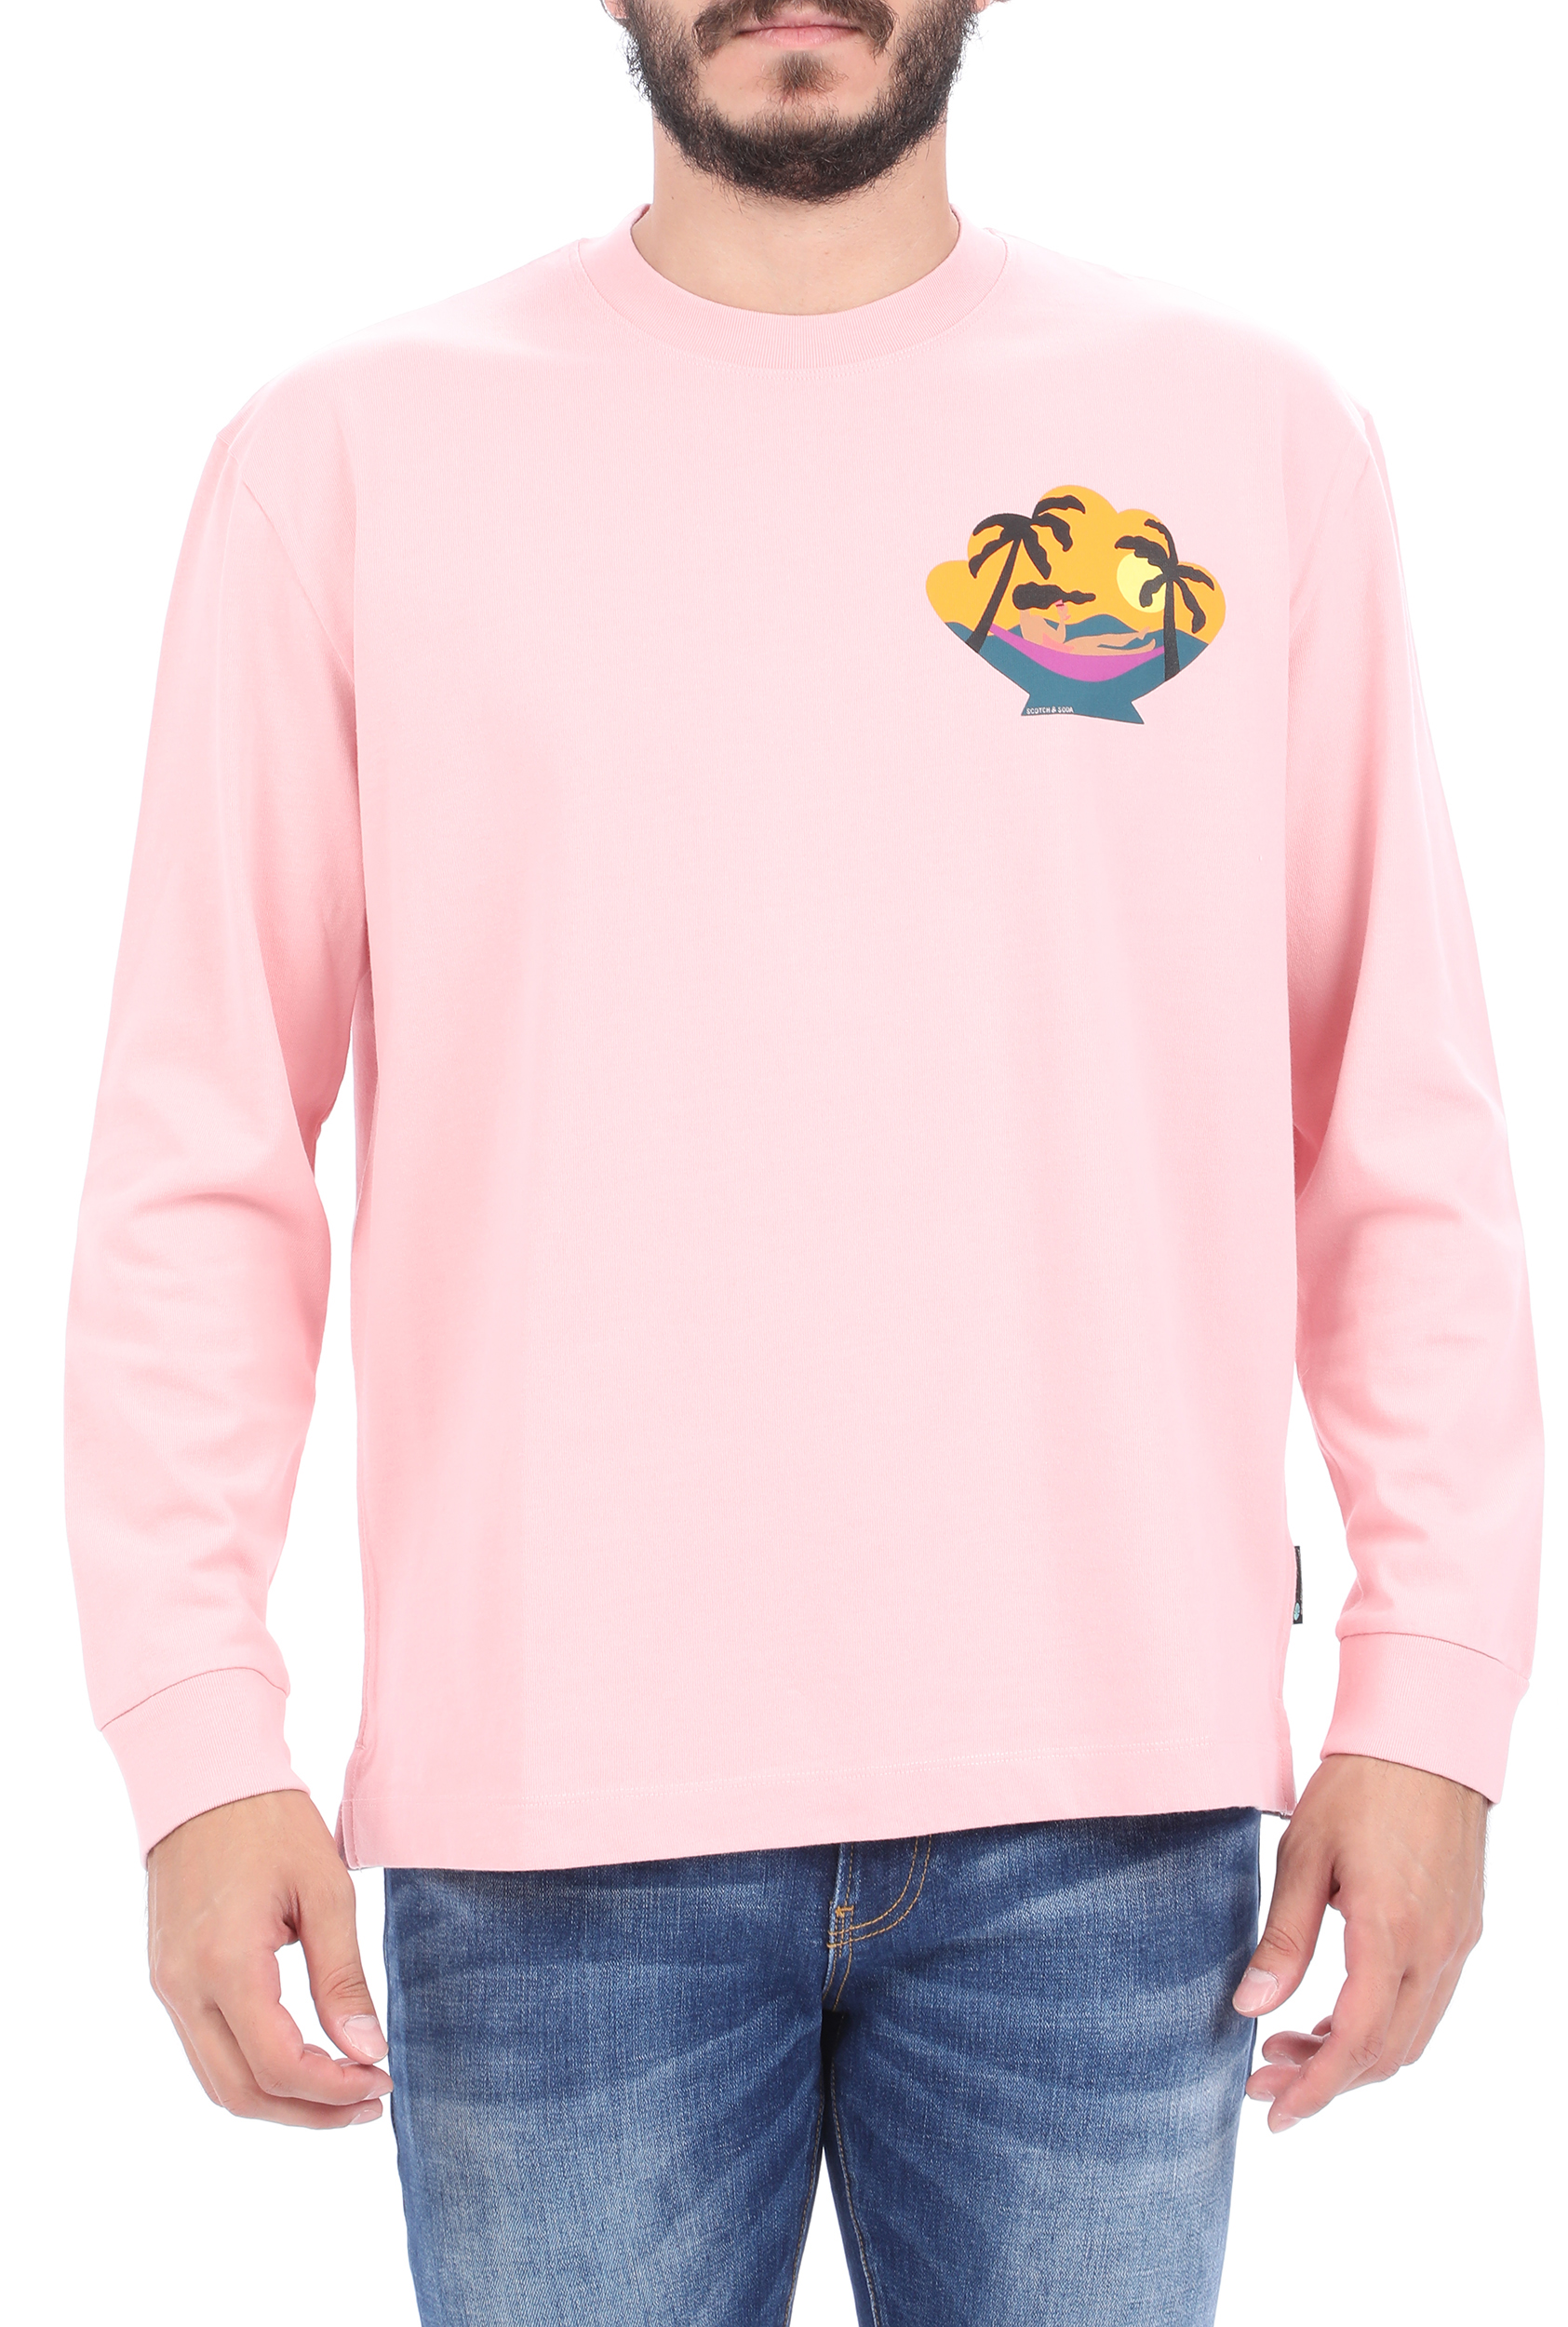 Ανδρικά/Ρούχα/Φούτερ/Μπλούζες SCOTCH & SODA - Ανδρική φούτερ μπλούζα SCOTCH & SODA Oversized heavy jersey ροζ